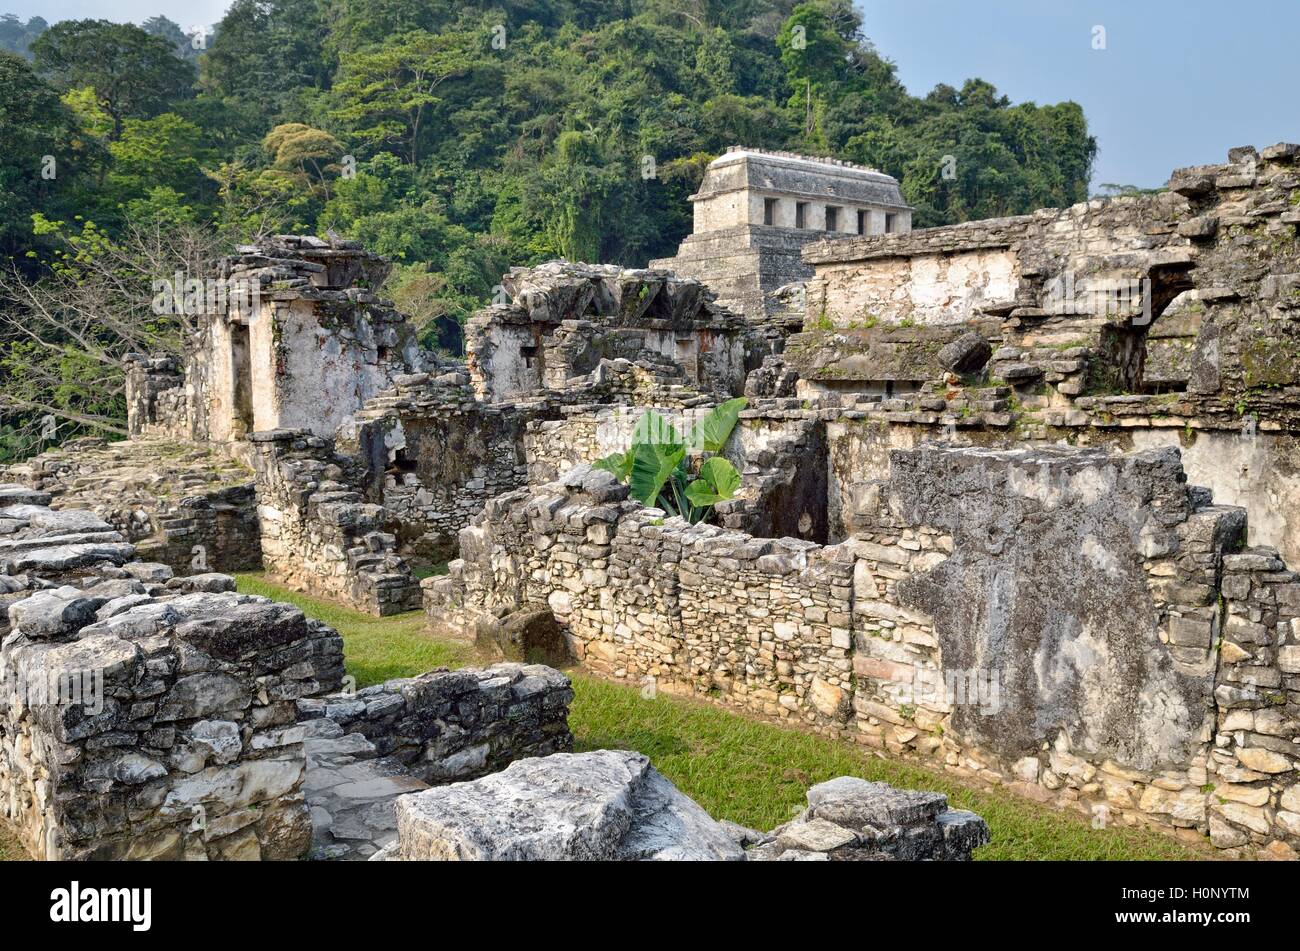 El Palacio, vista parcial, detrás del templo de las inscripciones, las ruinas mayas de Palenque, Chiapas, México. Foto de stock